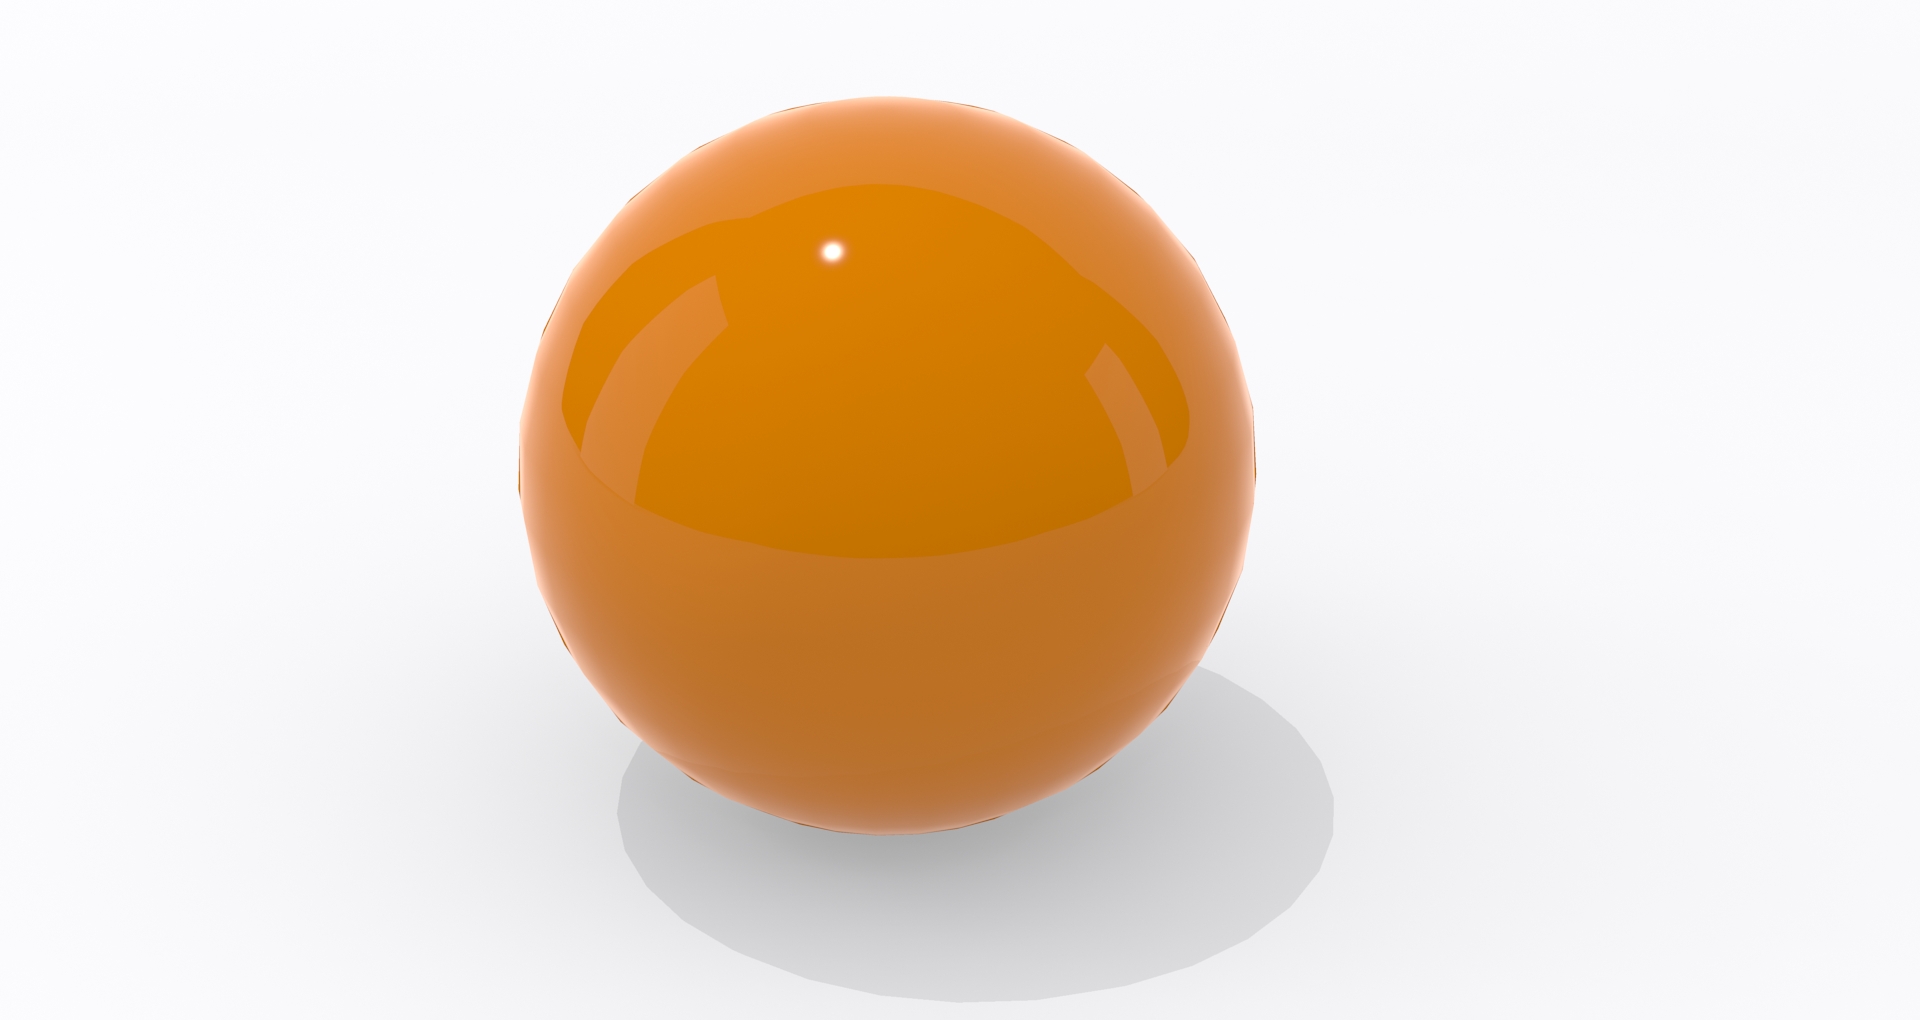 The Orange Sphere